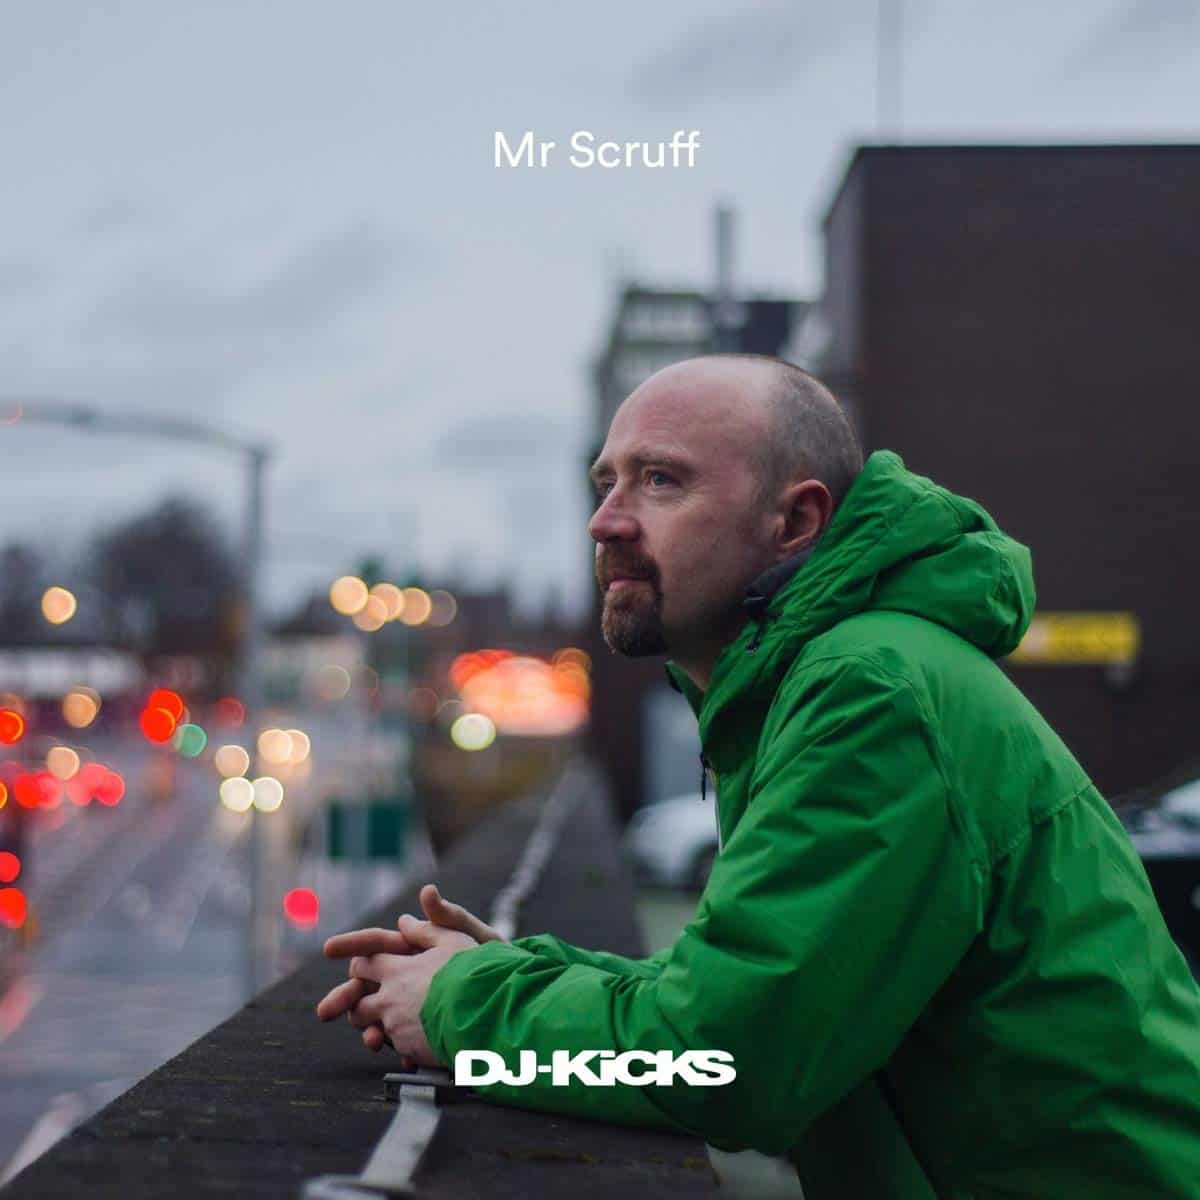 MR. SCRUFF - MR. SCRUFF: DJ KICKS